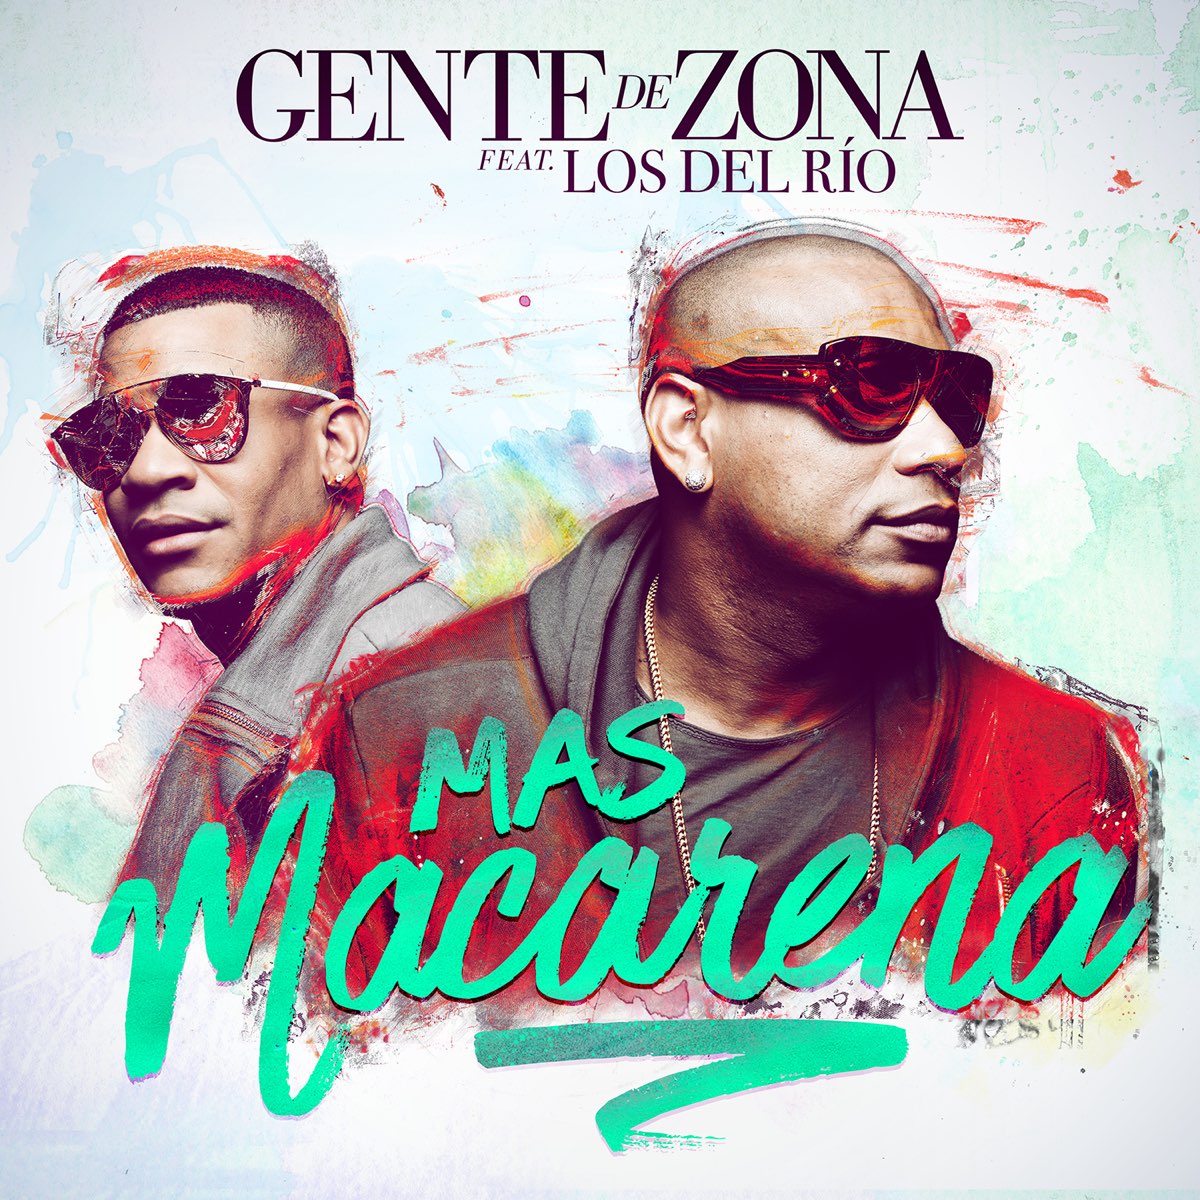 Gente De Zonaの「Mas Macarena (feat. Los del Río) - Single」をApple Musicで